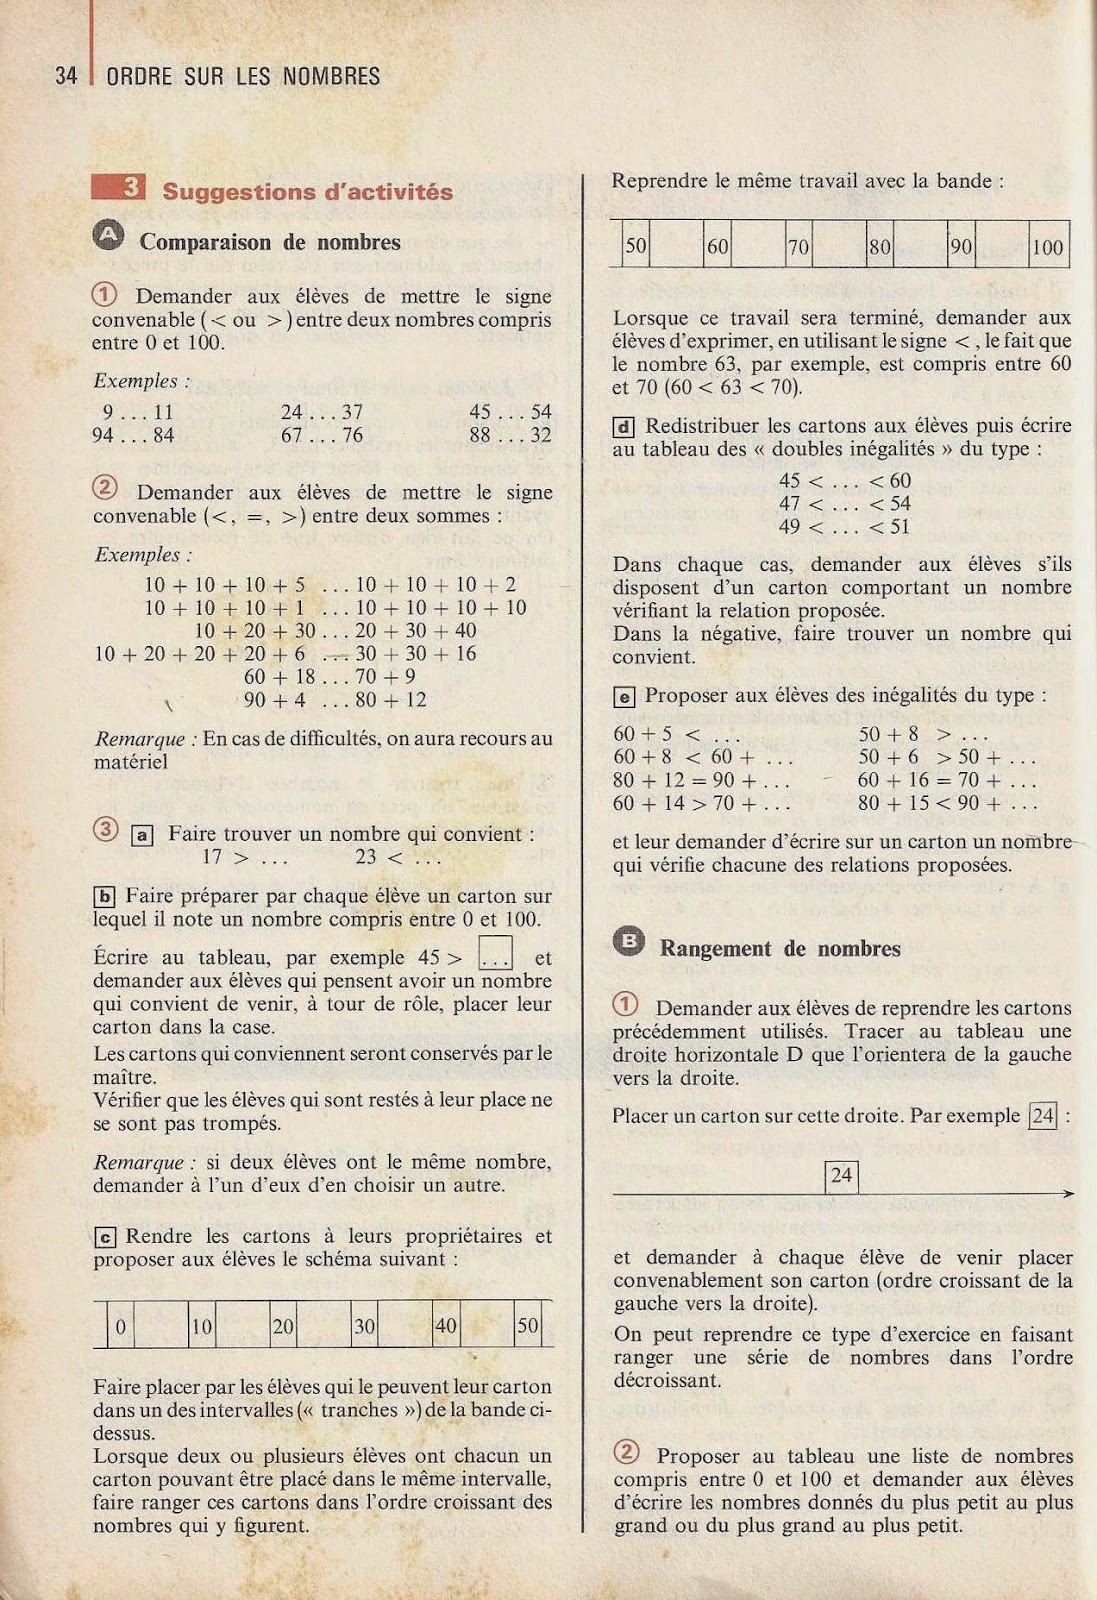 Manuels anciens: Eiller, Math et Calcul CE2, livre du maître (1980)